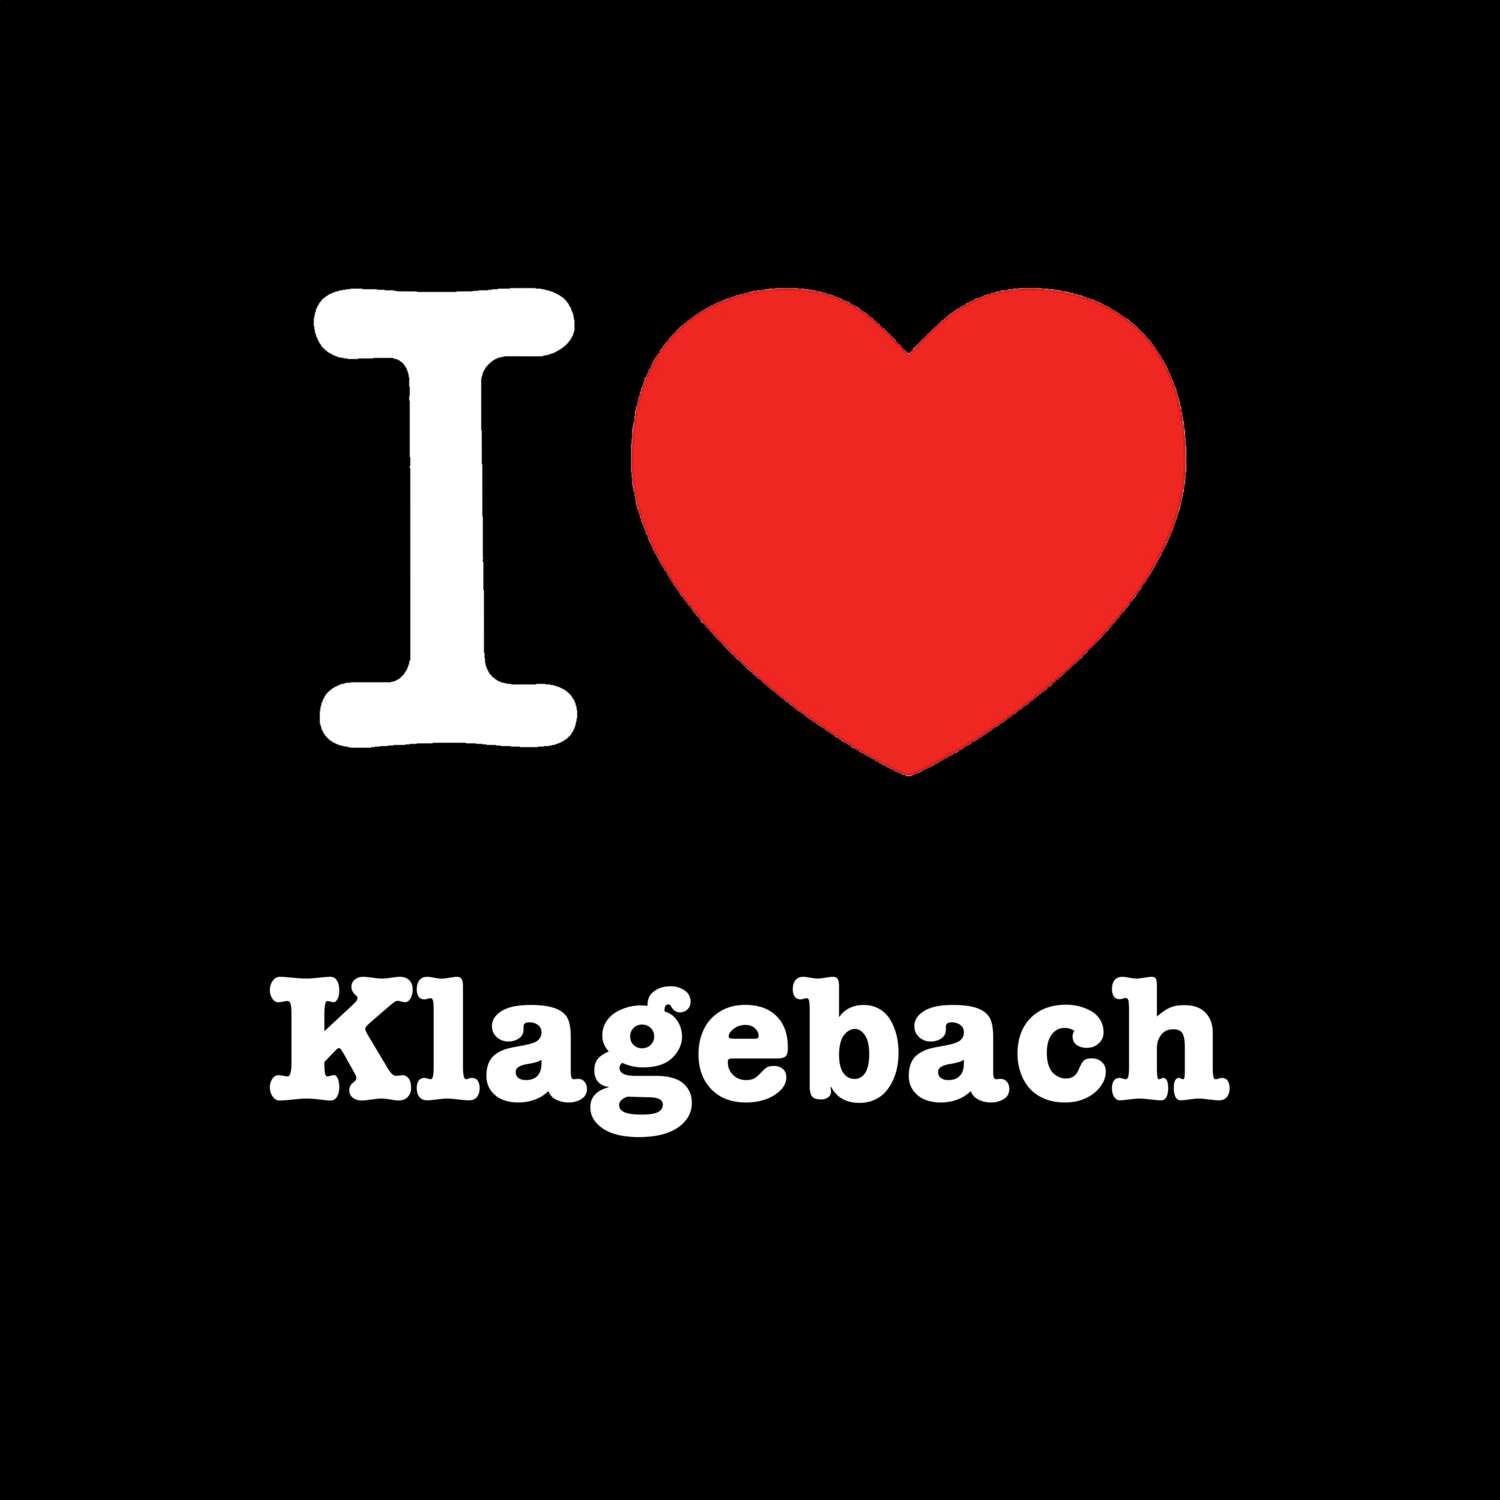 Klagebach T-Shirt »I love«